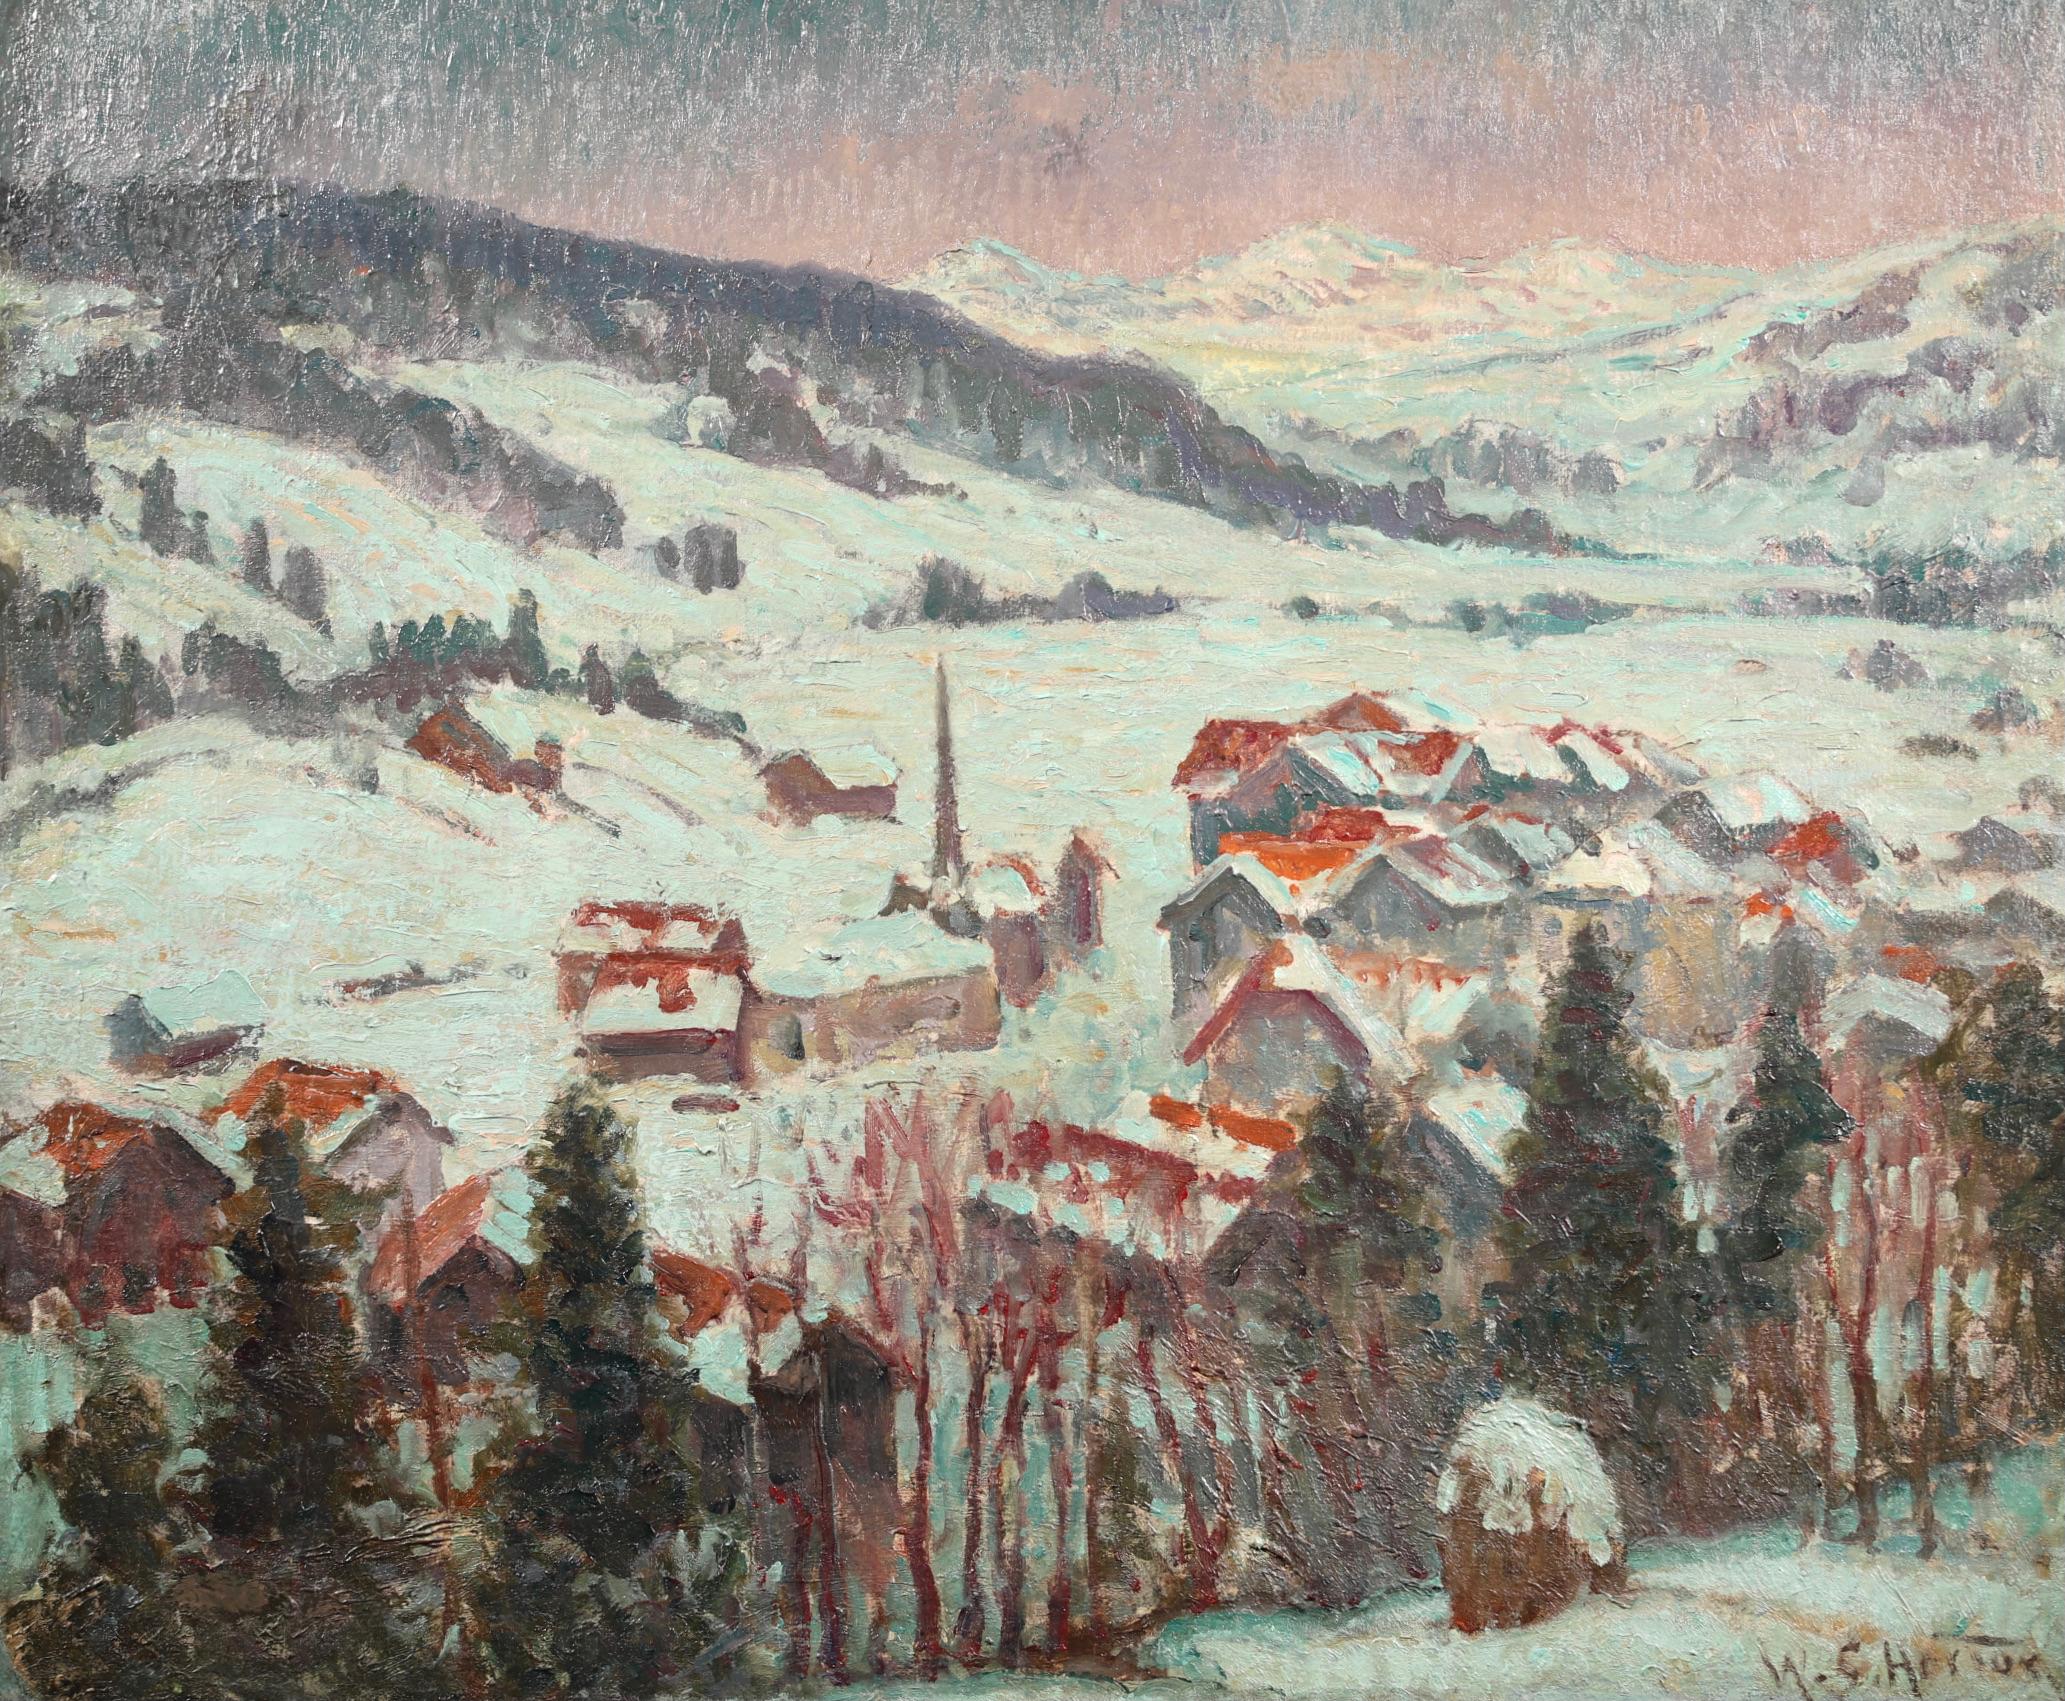 Signierte Öl auf Leinwand Landschaft von amerikanischen impressionistischen Maler William Samuel Horton. Das Werk zeigt eine Ansicht der Stadt Gstaad im Südwesten der Schweiz. Die Gebäude und die Landschaft sind mit einer weißen Schneedecke bedeckt,